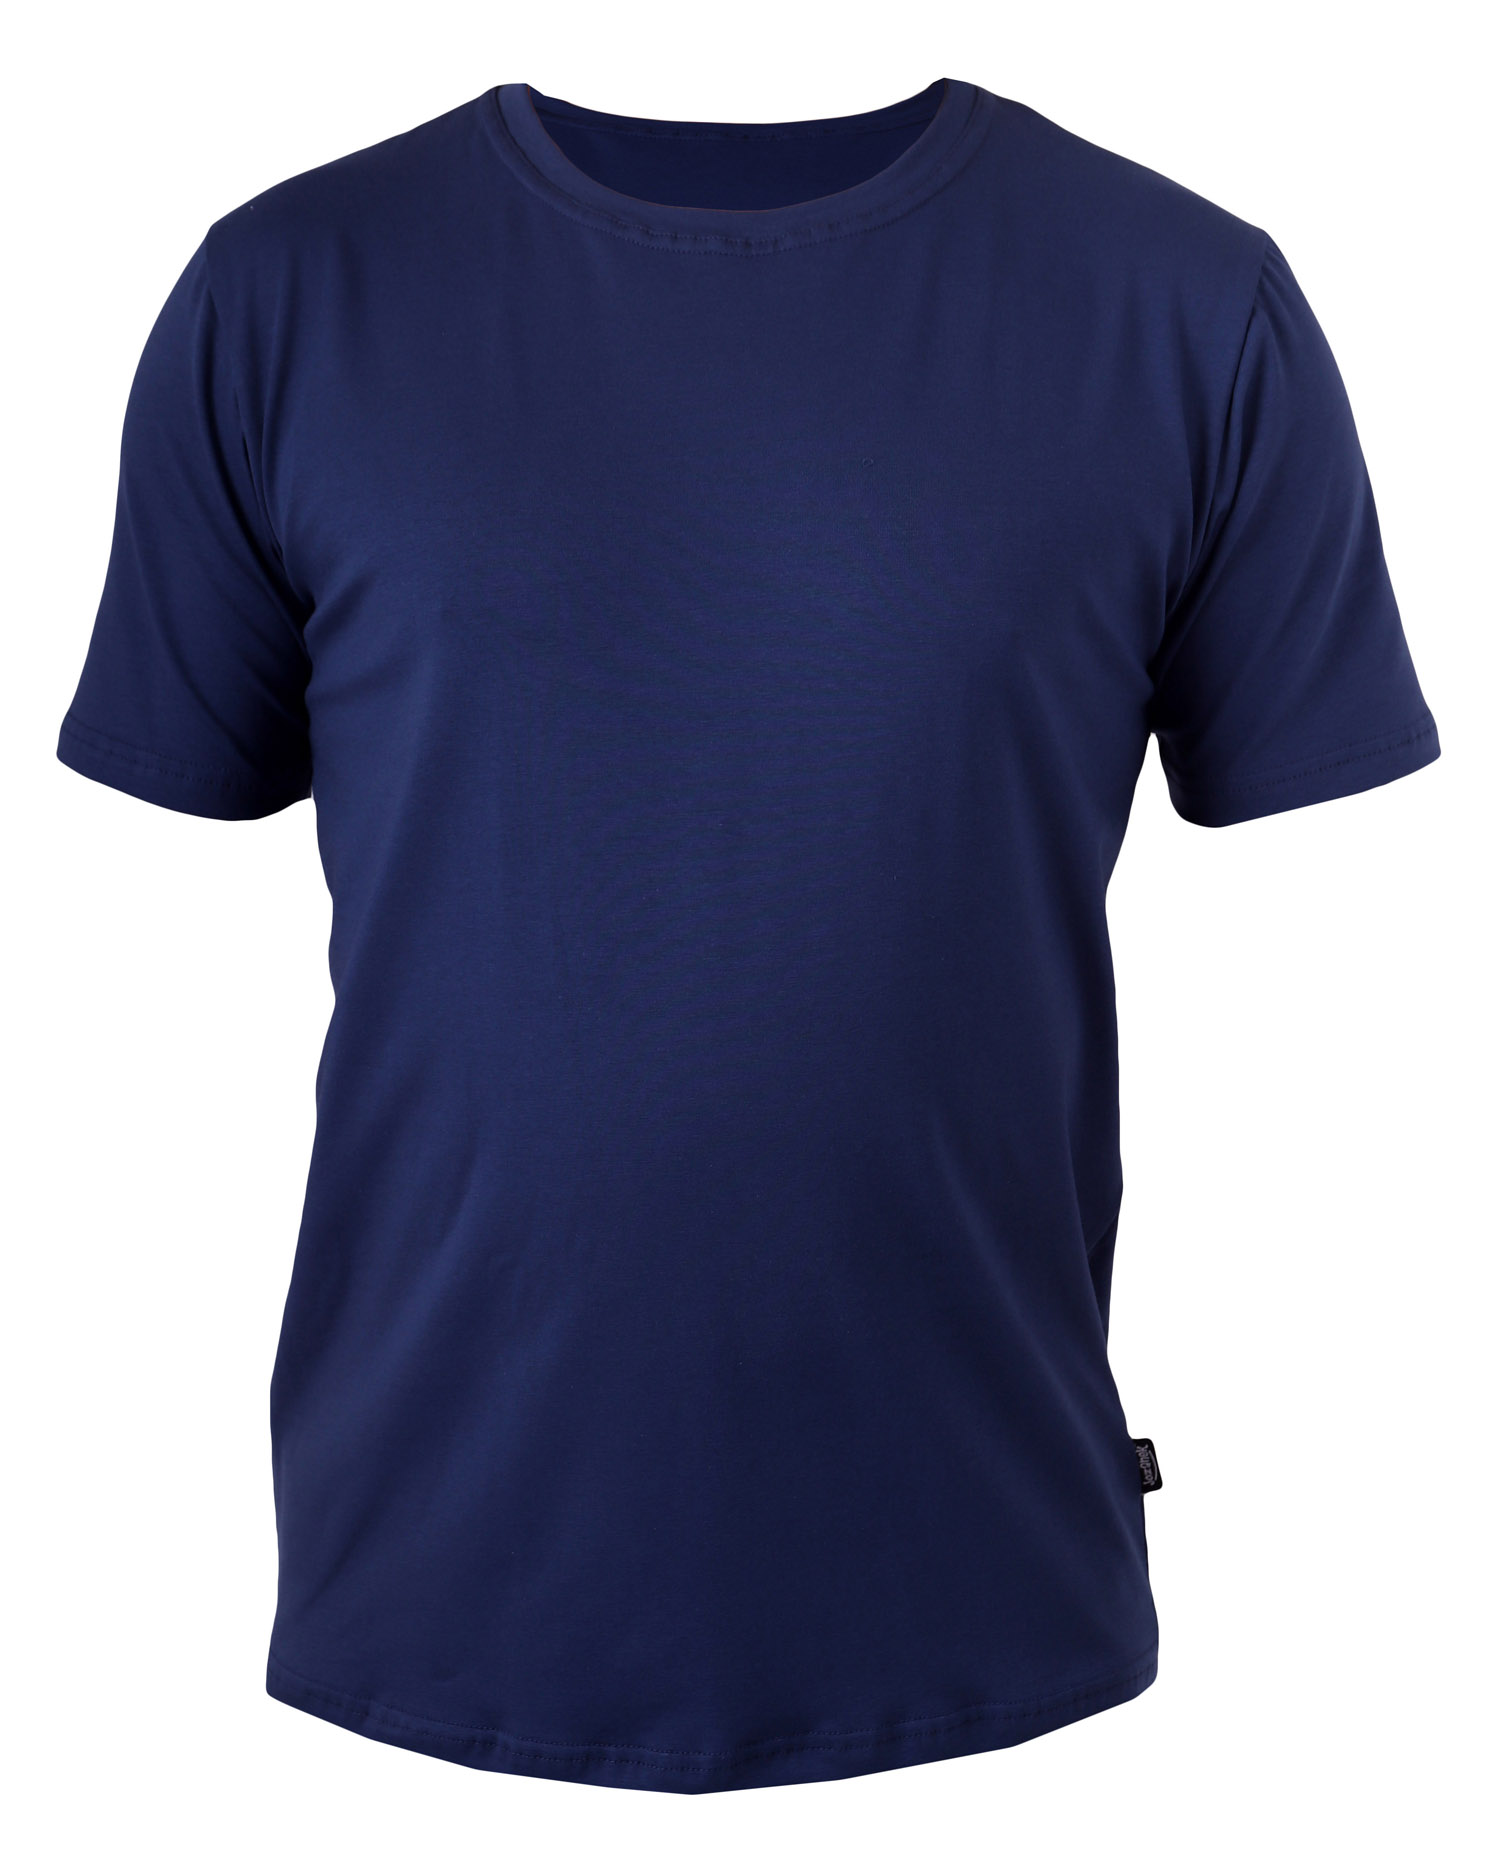 Men’s T-shirt Marek, L, 2. quality, No. 697